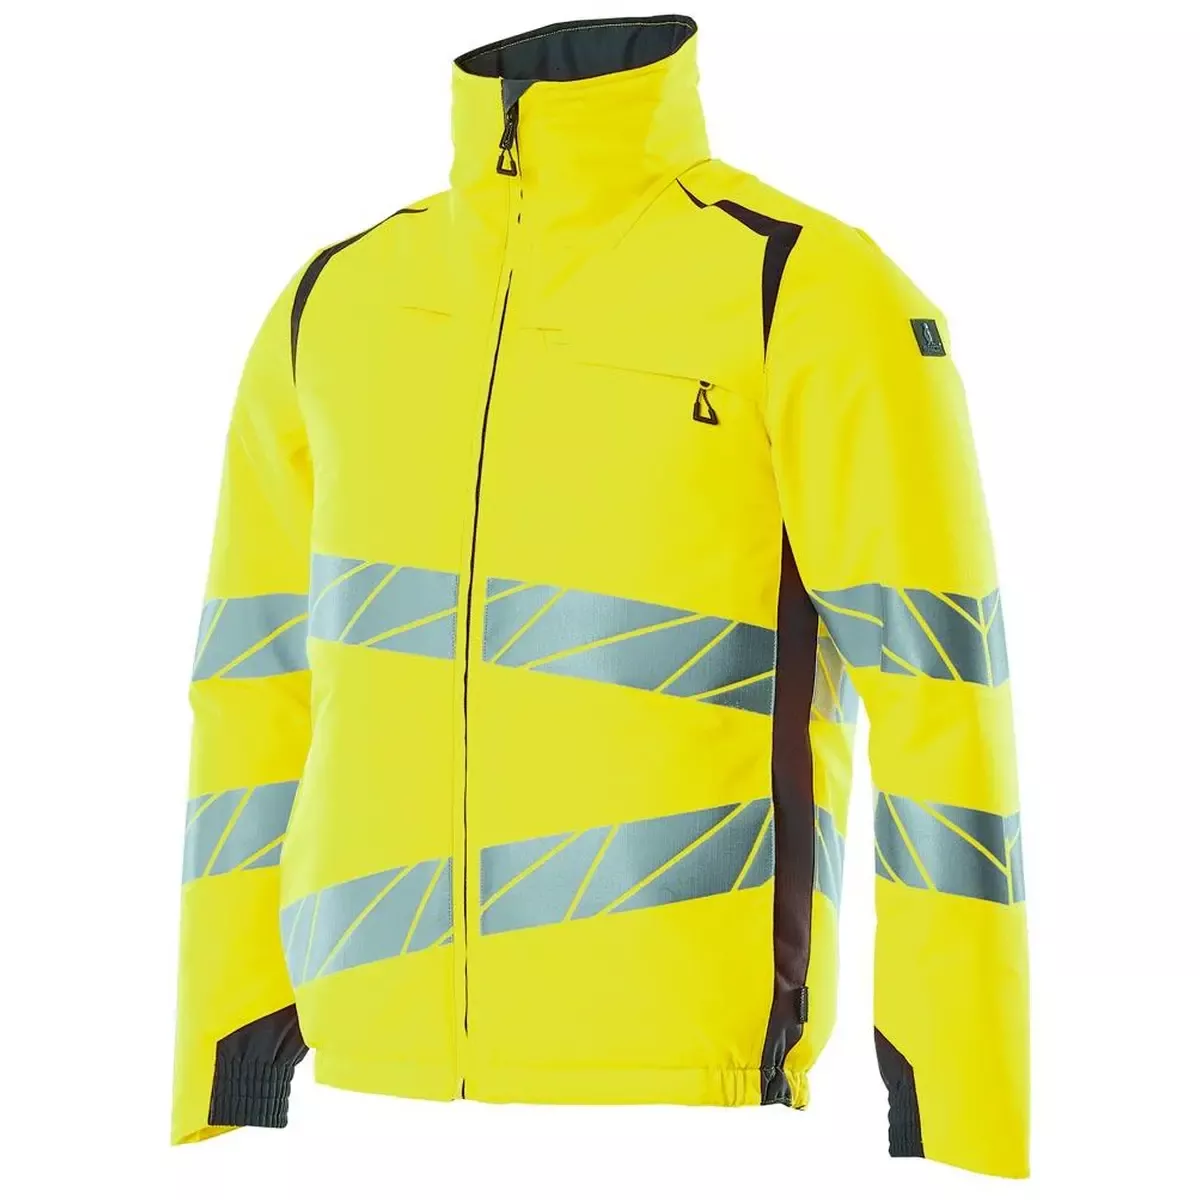 Warnschutz-Winterjacke Accelerate Safe, Farbe HiVis gelb/schwarzblau, Gr. 3XL